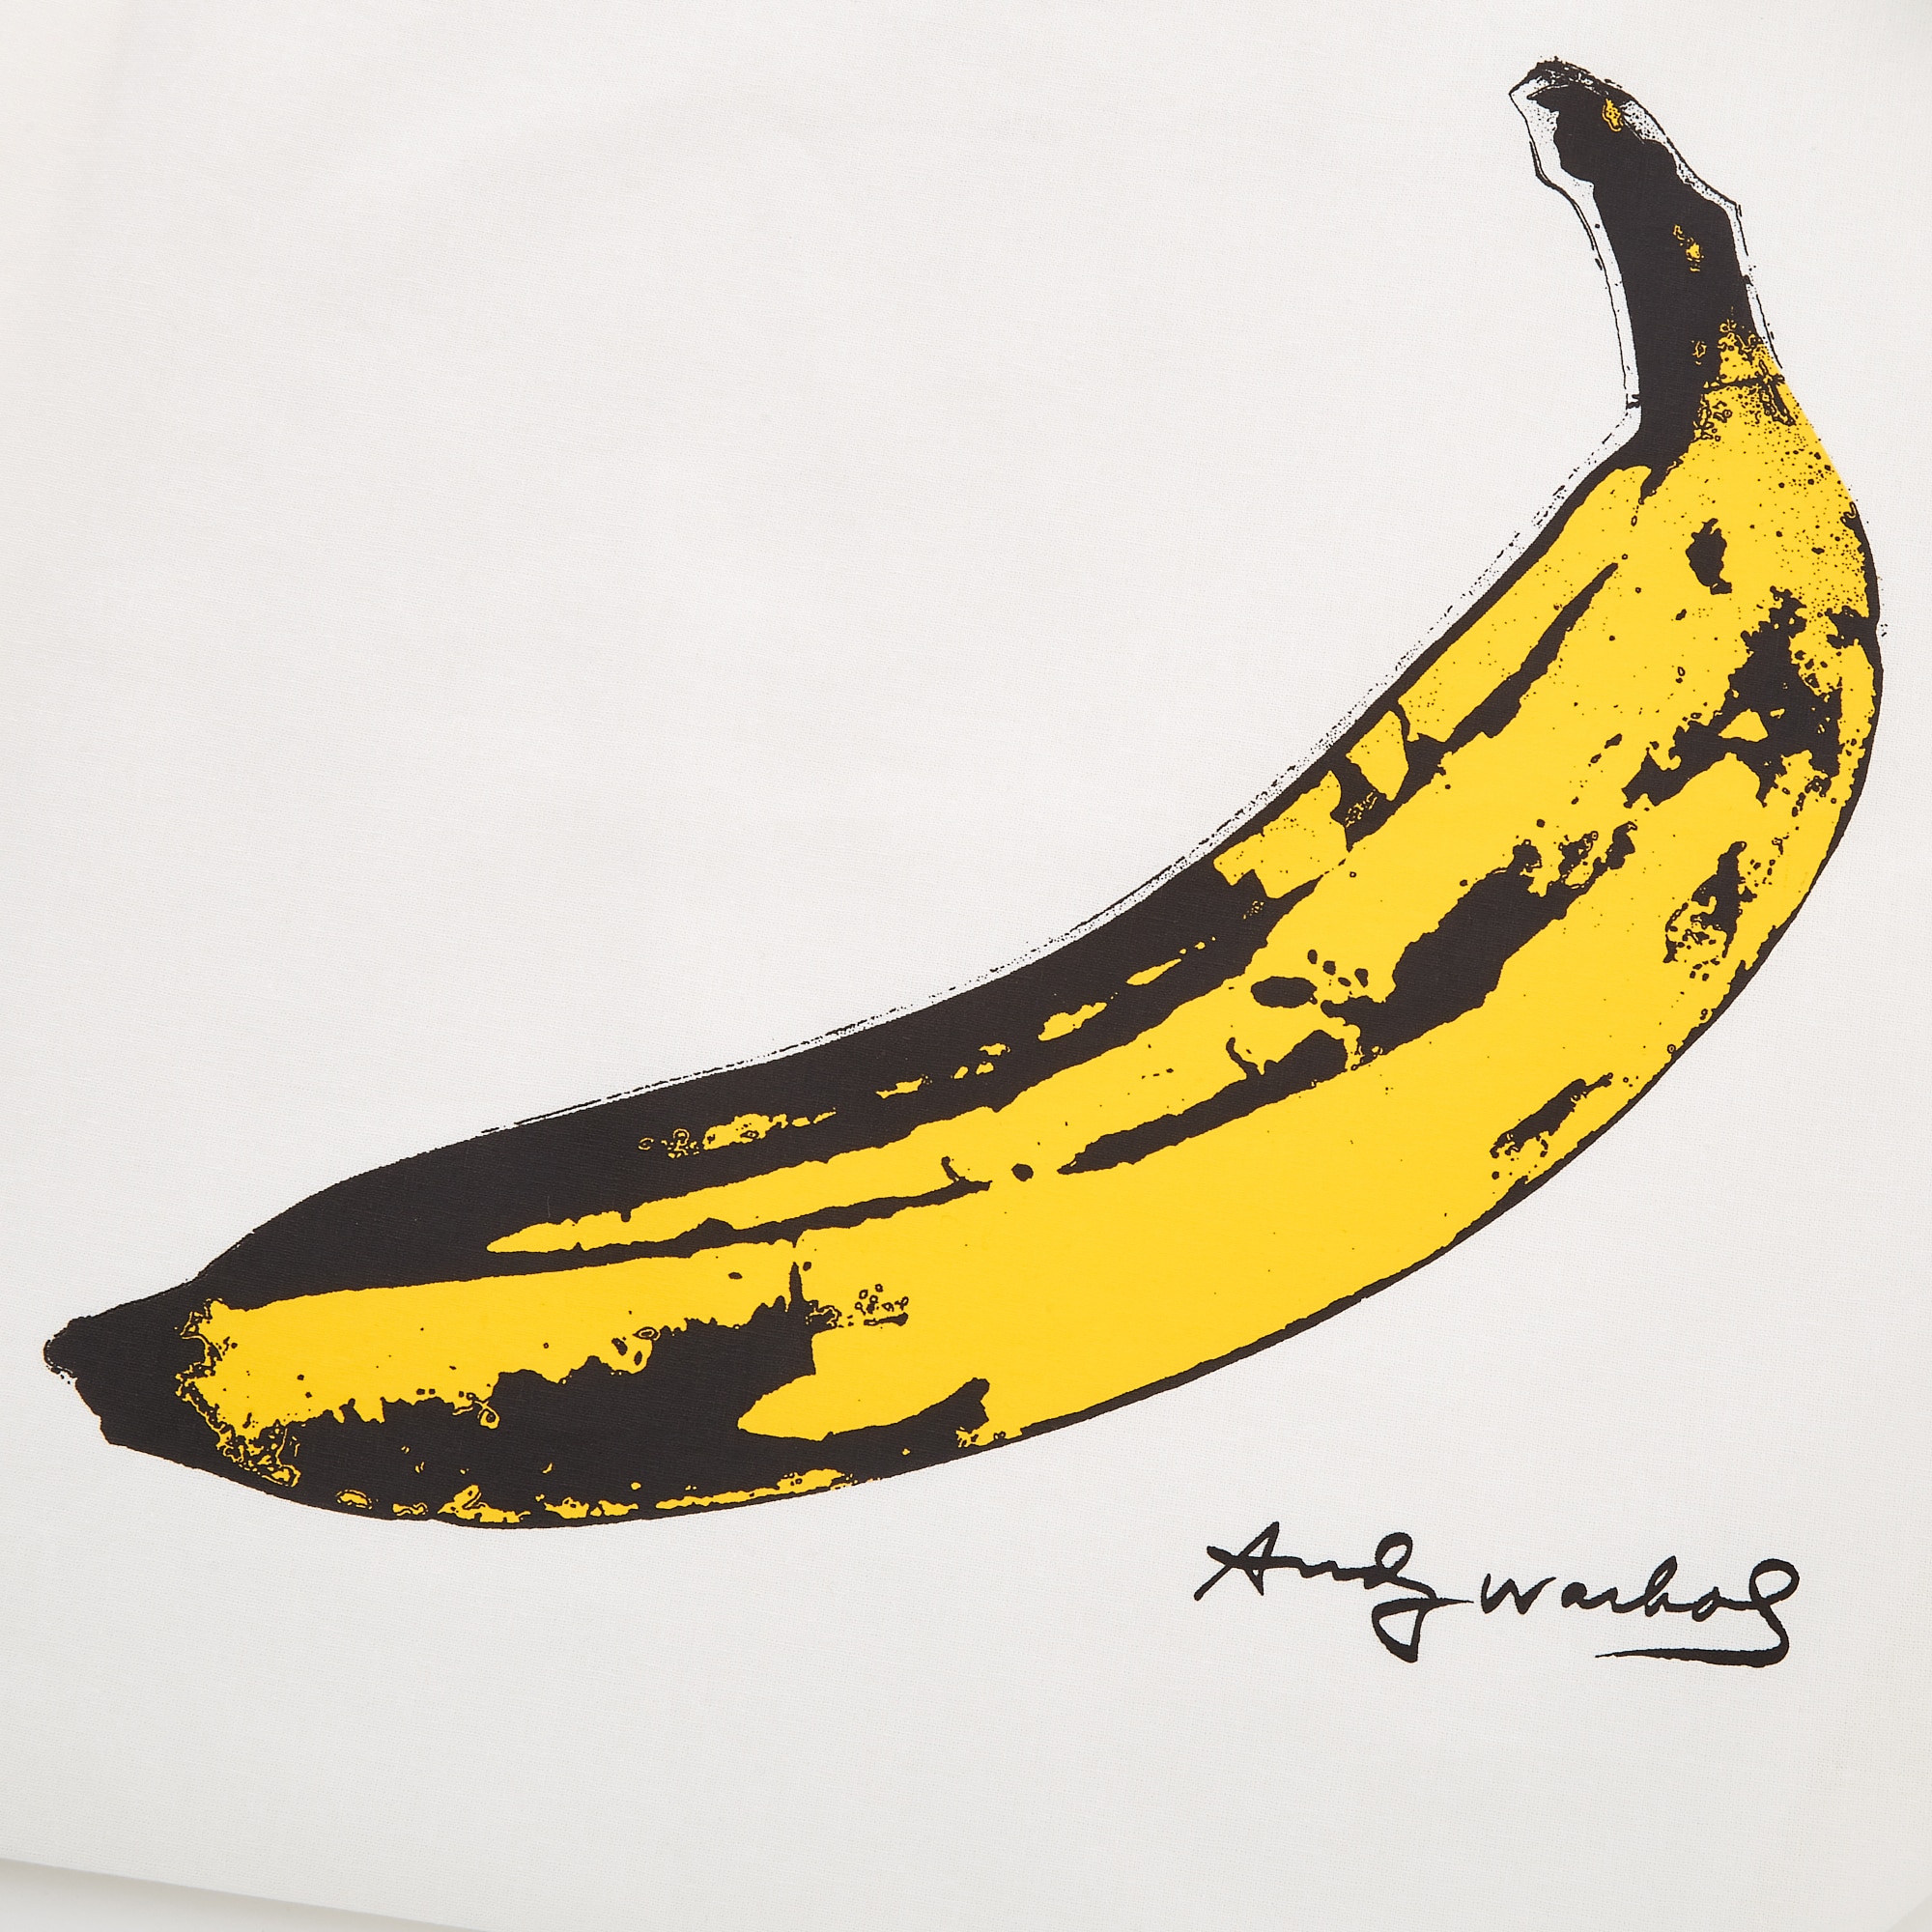 アンディ・ウォーホル Andy Warhol バナナ ロンT - Tシャツ